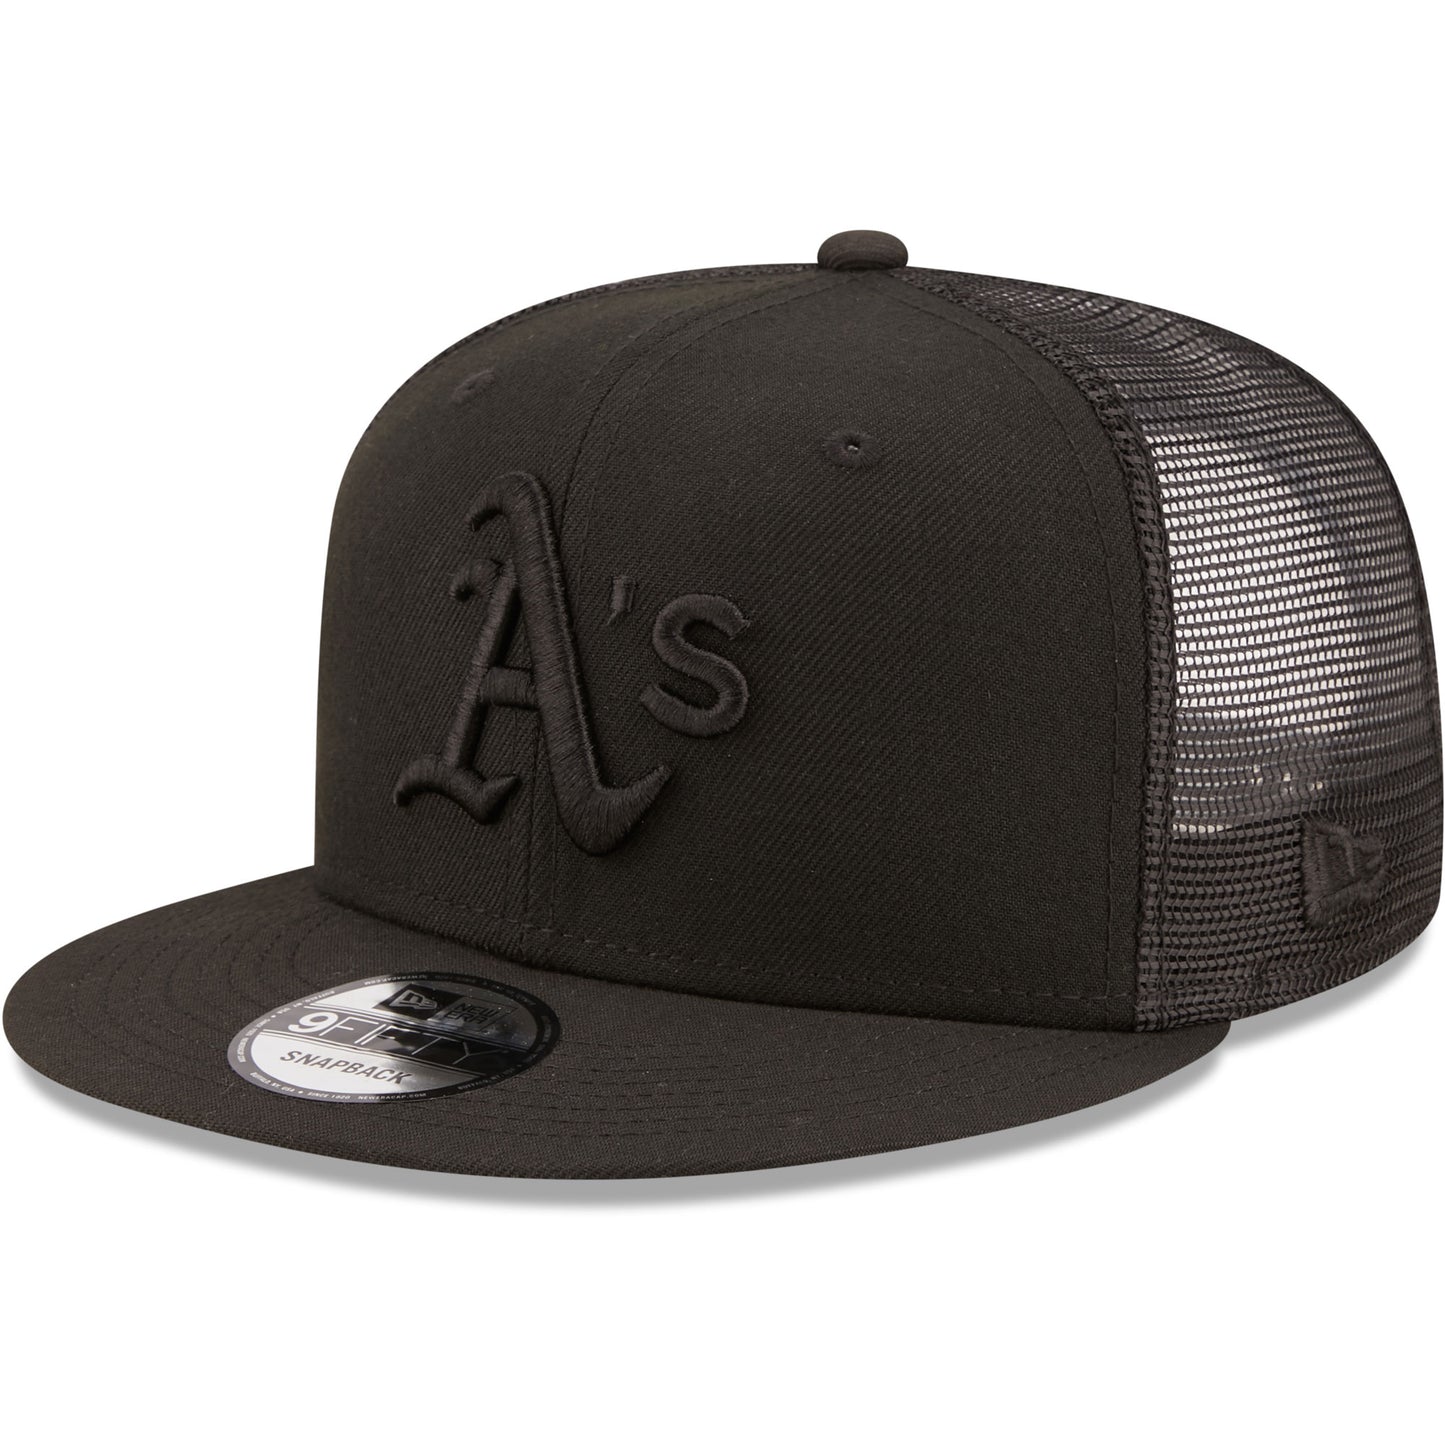 Oakland Athletics New Era Blackout Trucker 9FIFTY Snapback Hat